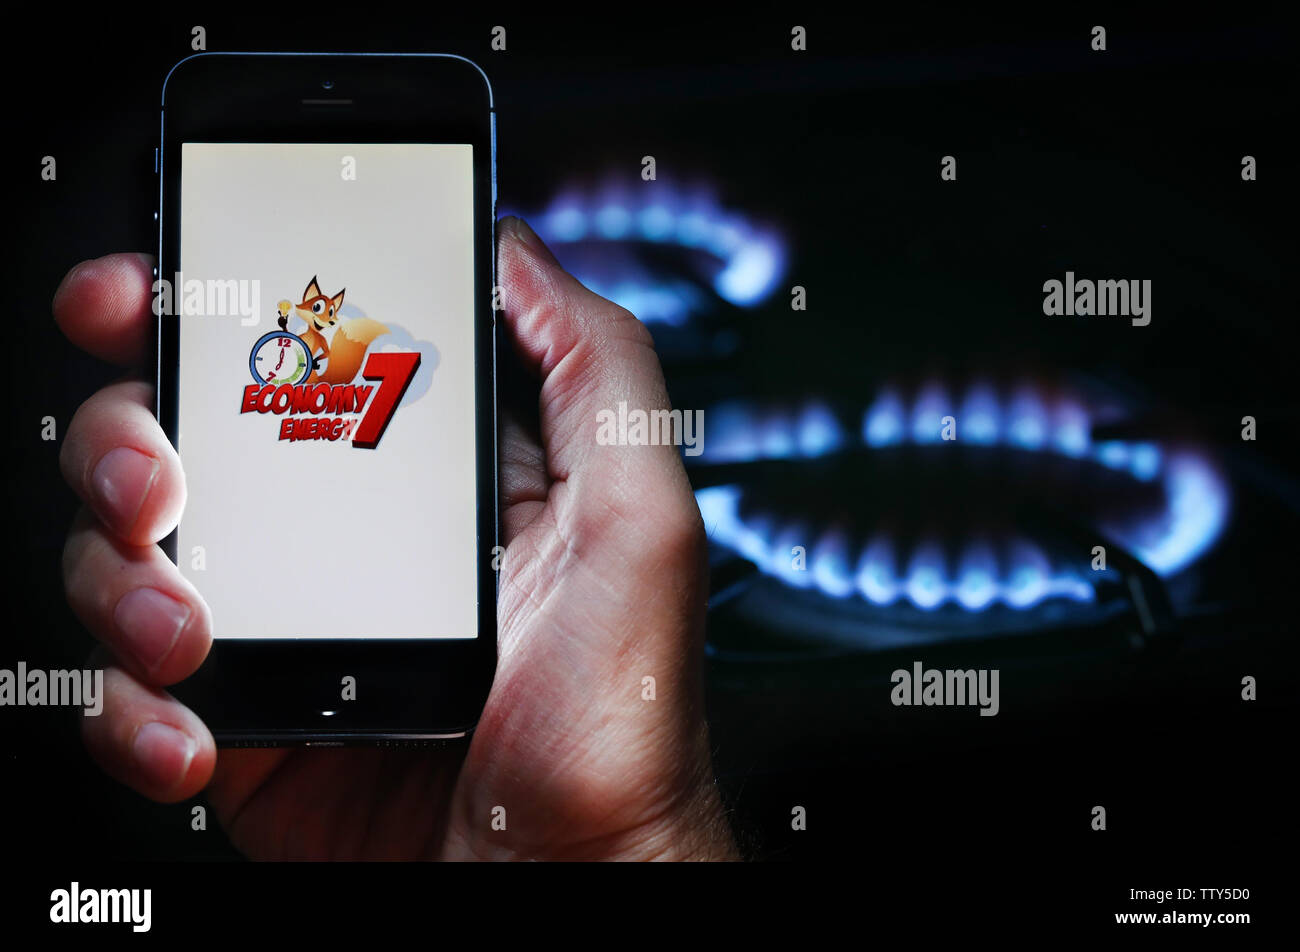 Un uomo che guarda il logo del sito web per l'energia economia aziendale 7 Energia sul suo telefono nella parte anteriore della sua cucina a gas (solo uso editoriale) Foto Stock